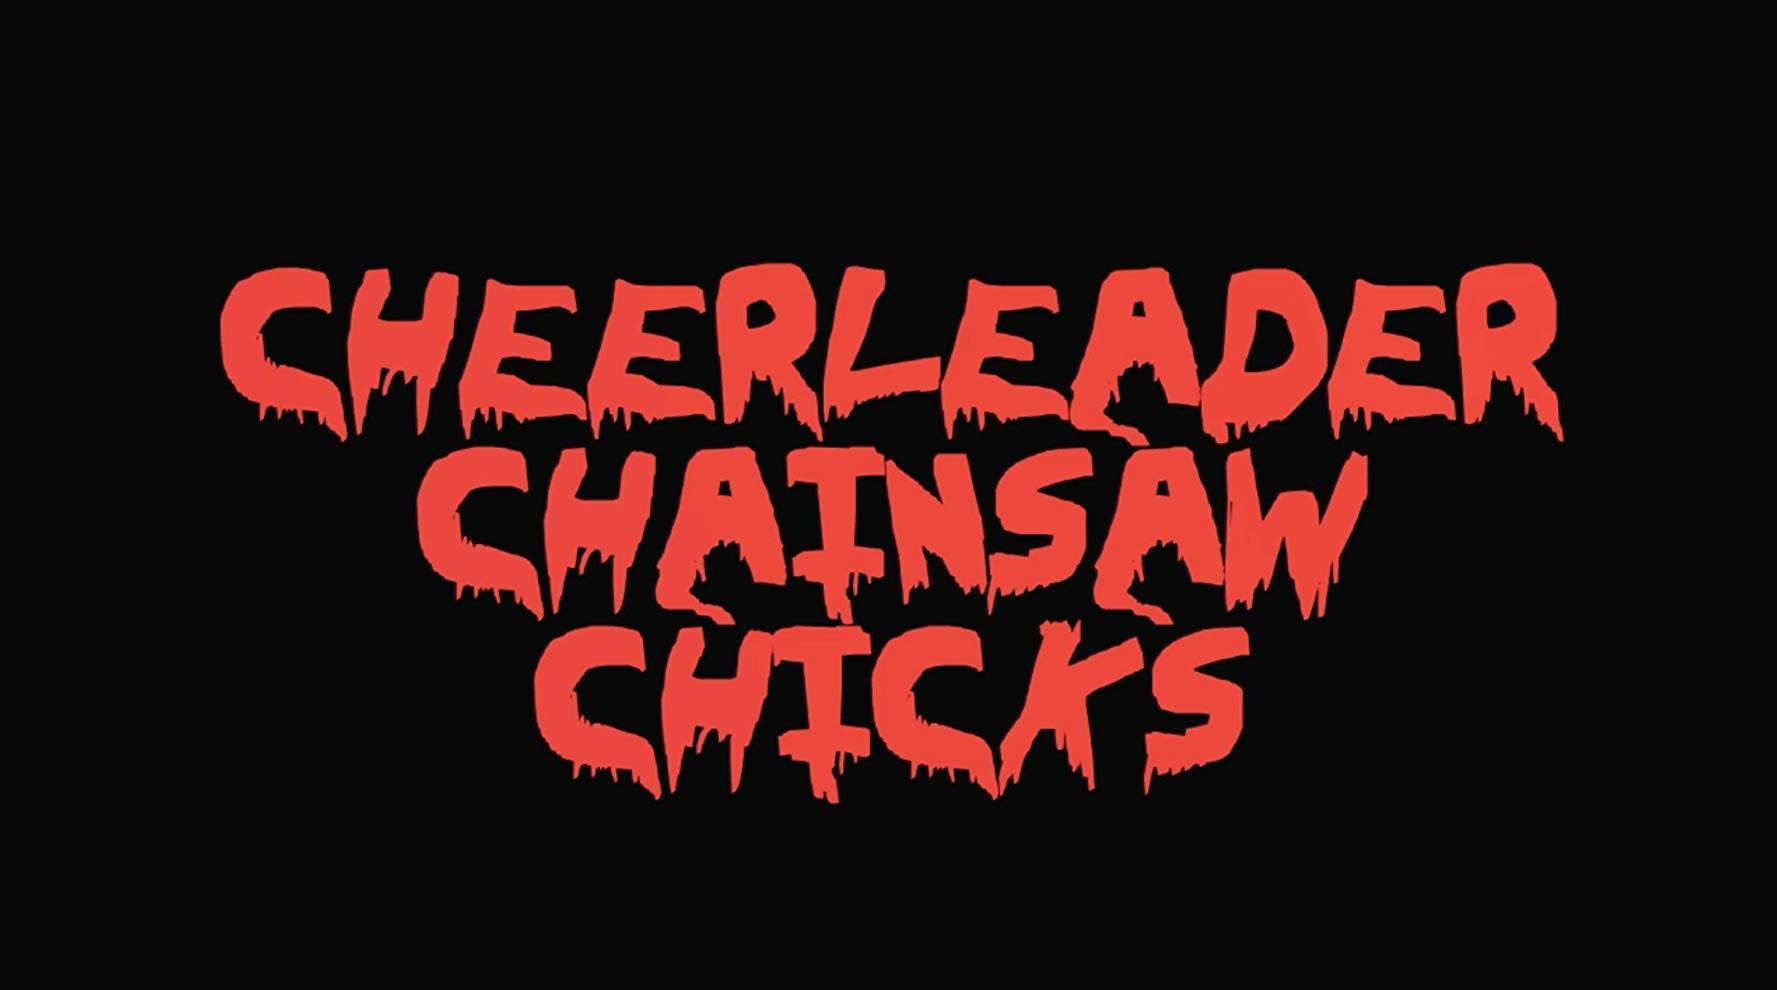 مشاهدة فيلم Cheerleader Chainsaw Chicks (2018) مترجم HD اون لاين